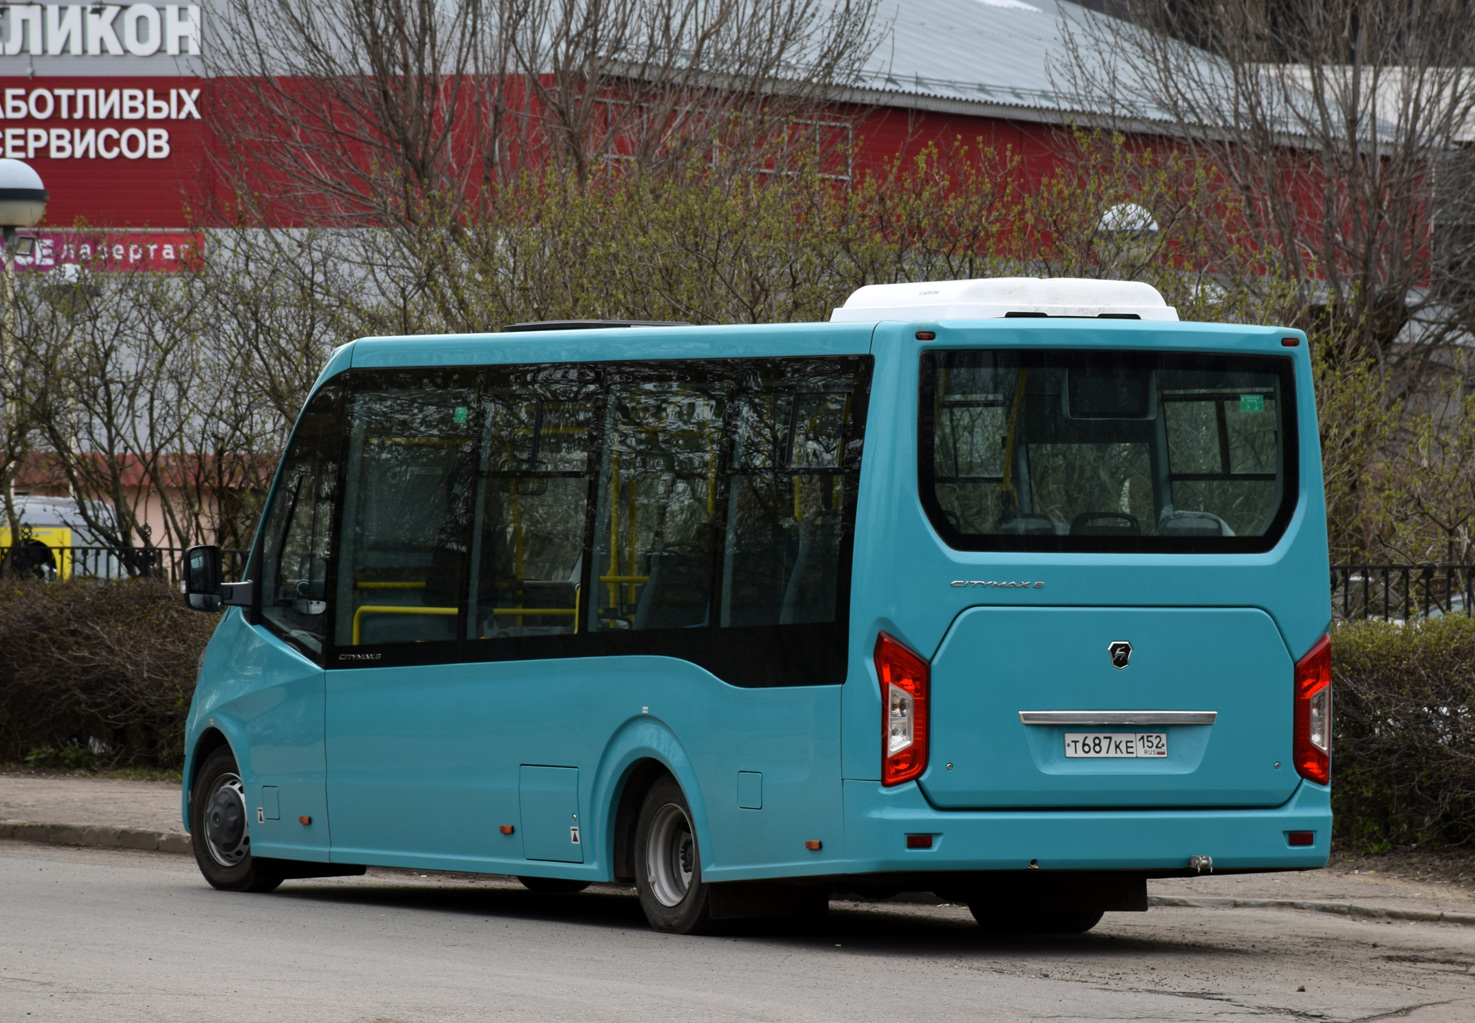 Nizhegorodskaya region, PAZ (test buses) č. Т 687 КЕ 152